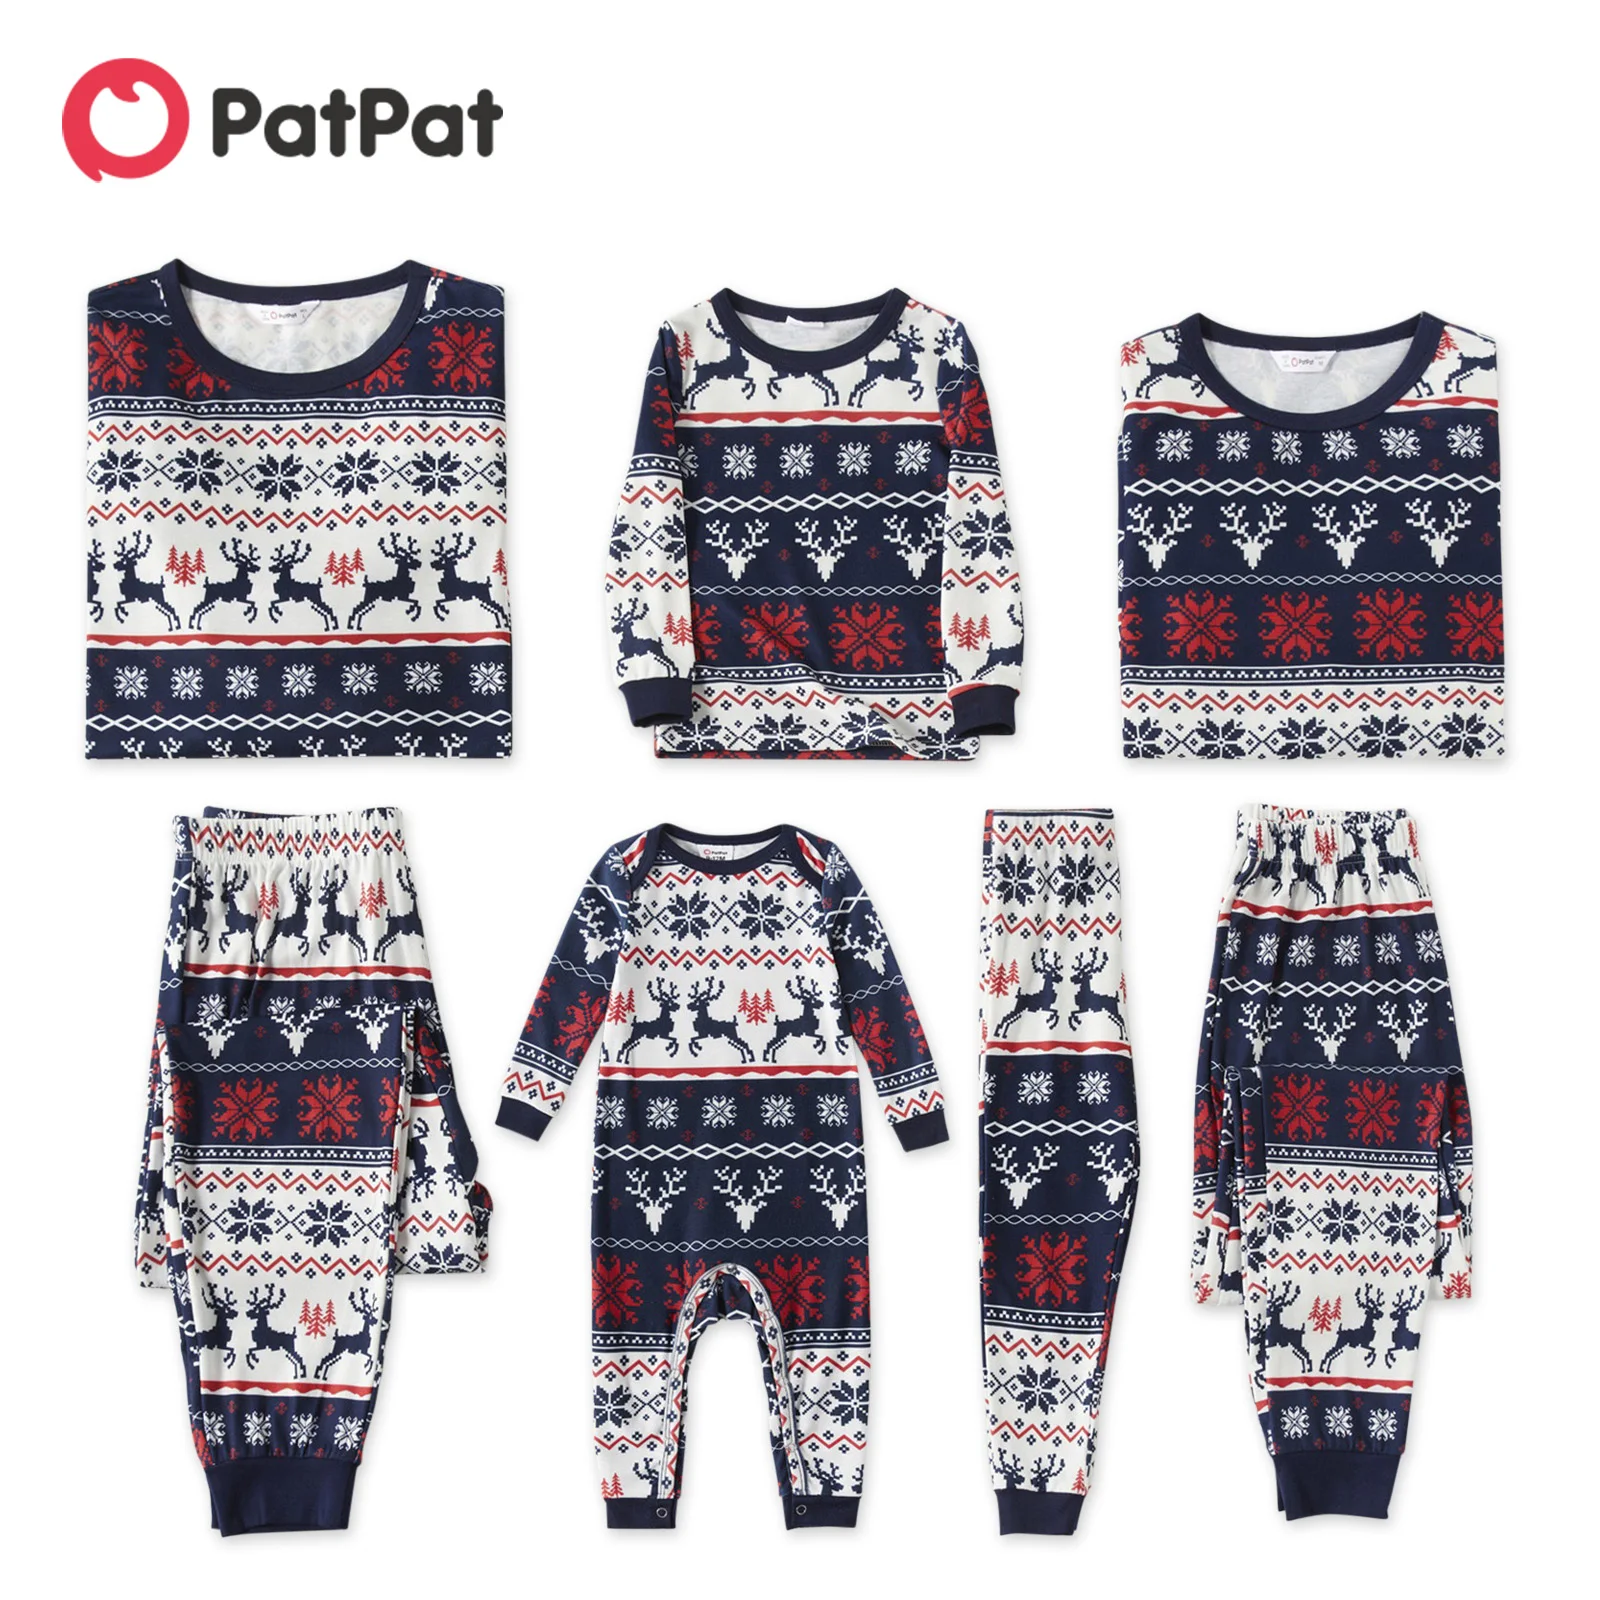 Tanio PatPat świąteczna piżama zestaw rodzinny